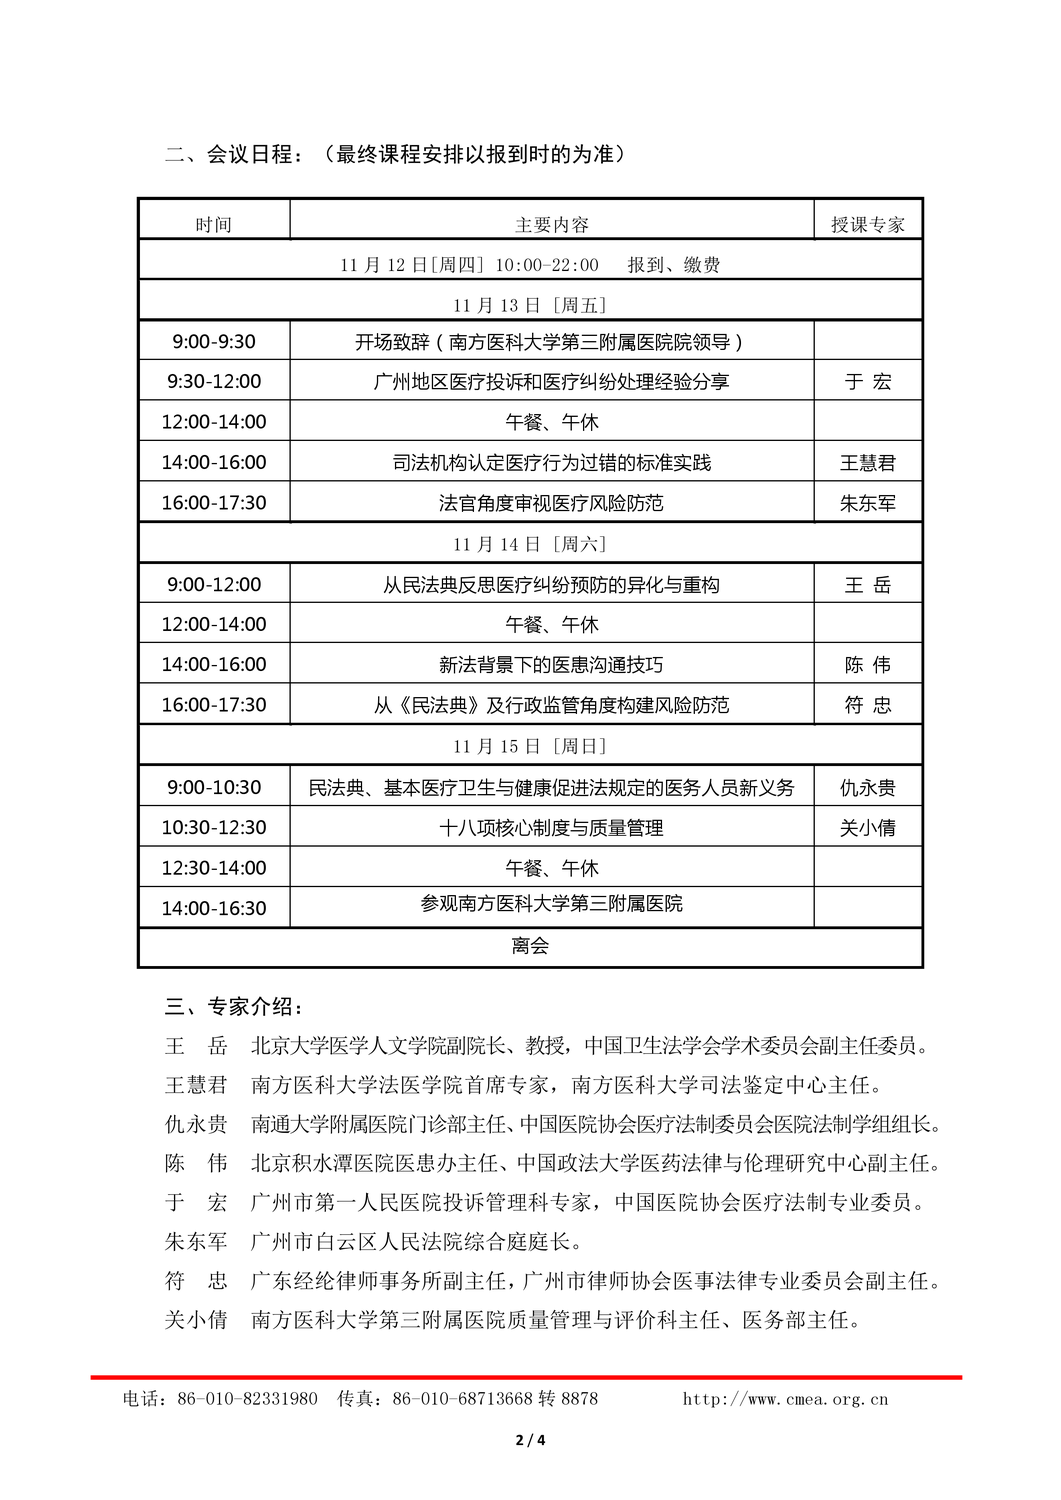 11月广州-新法背景下医疗纠纷预防处理实务研讨会_页面_2.png